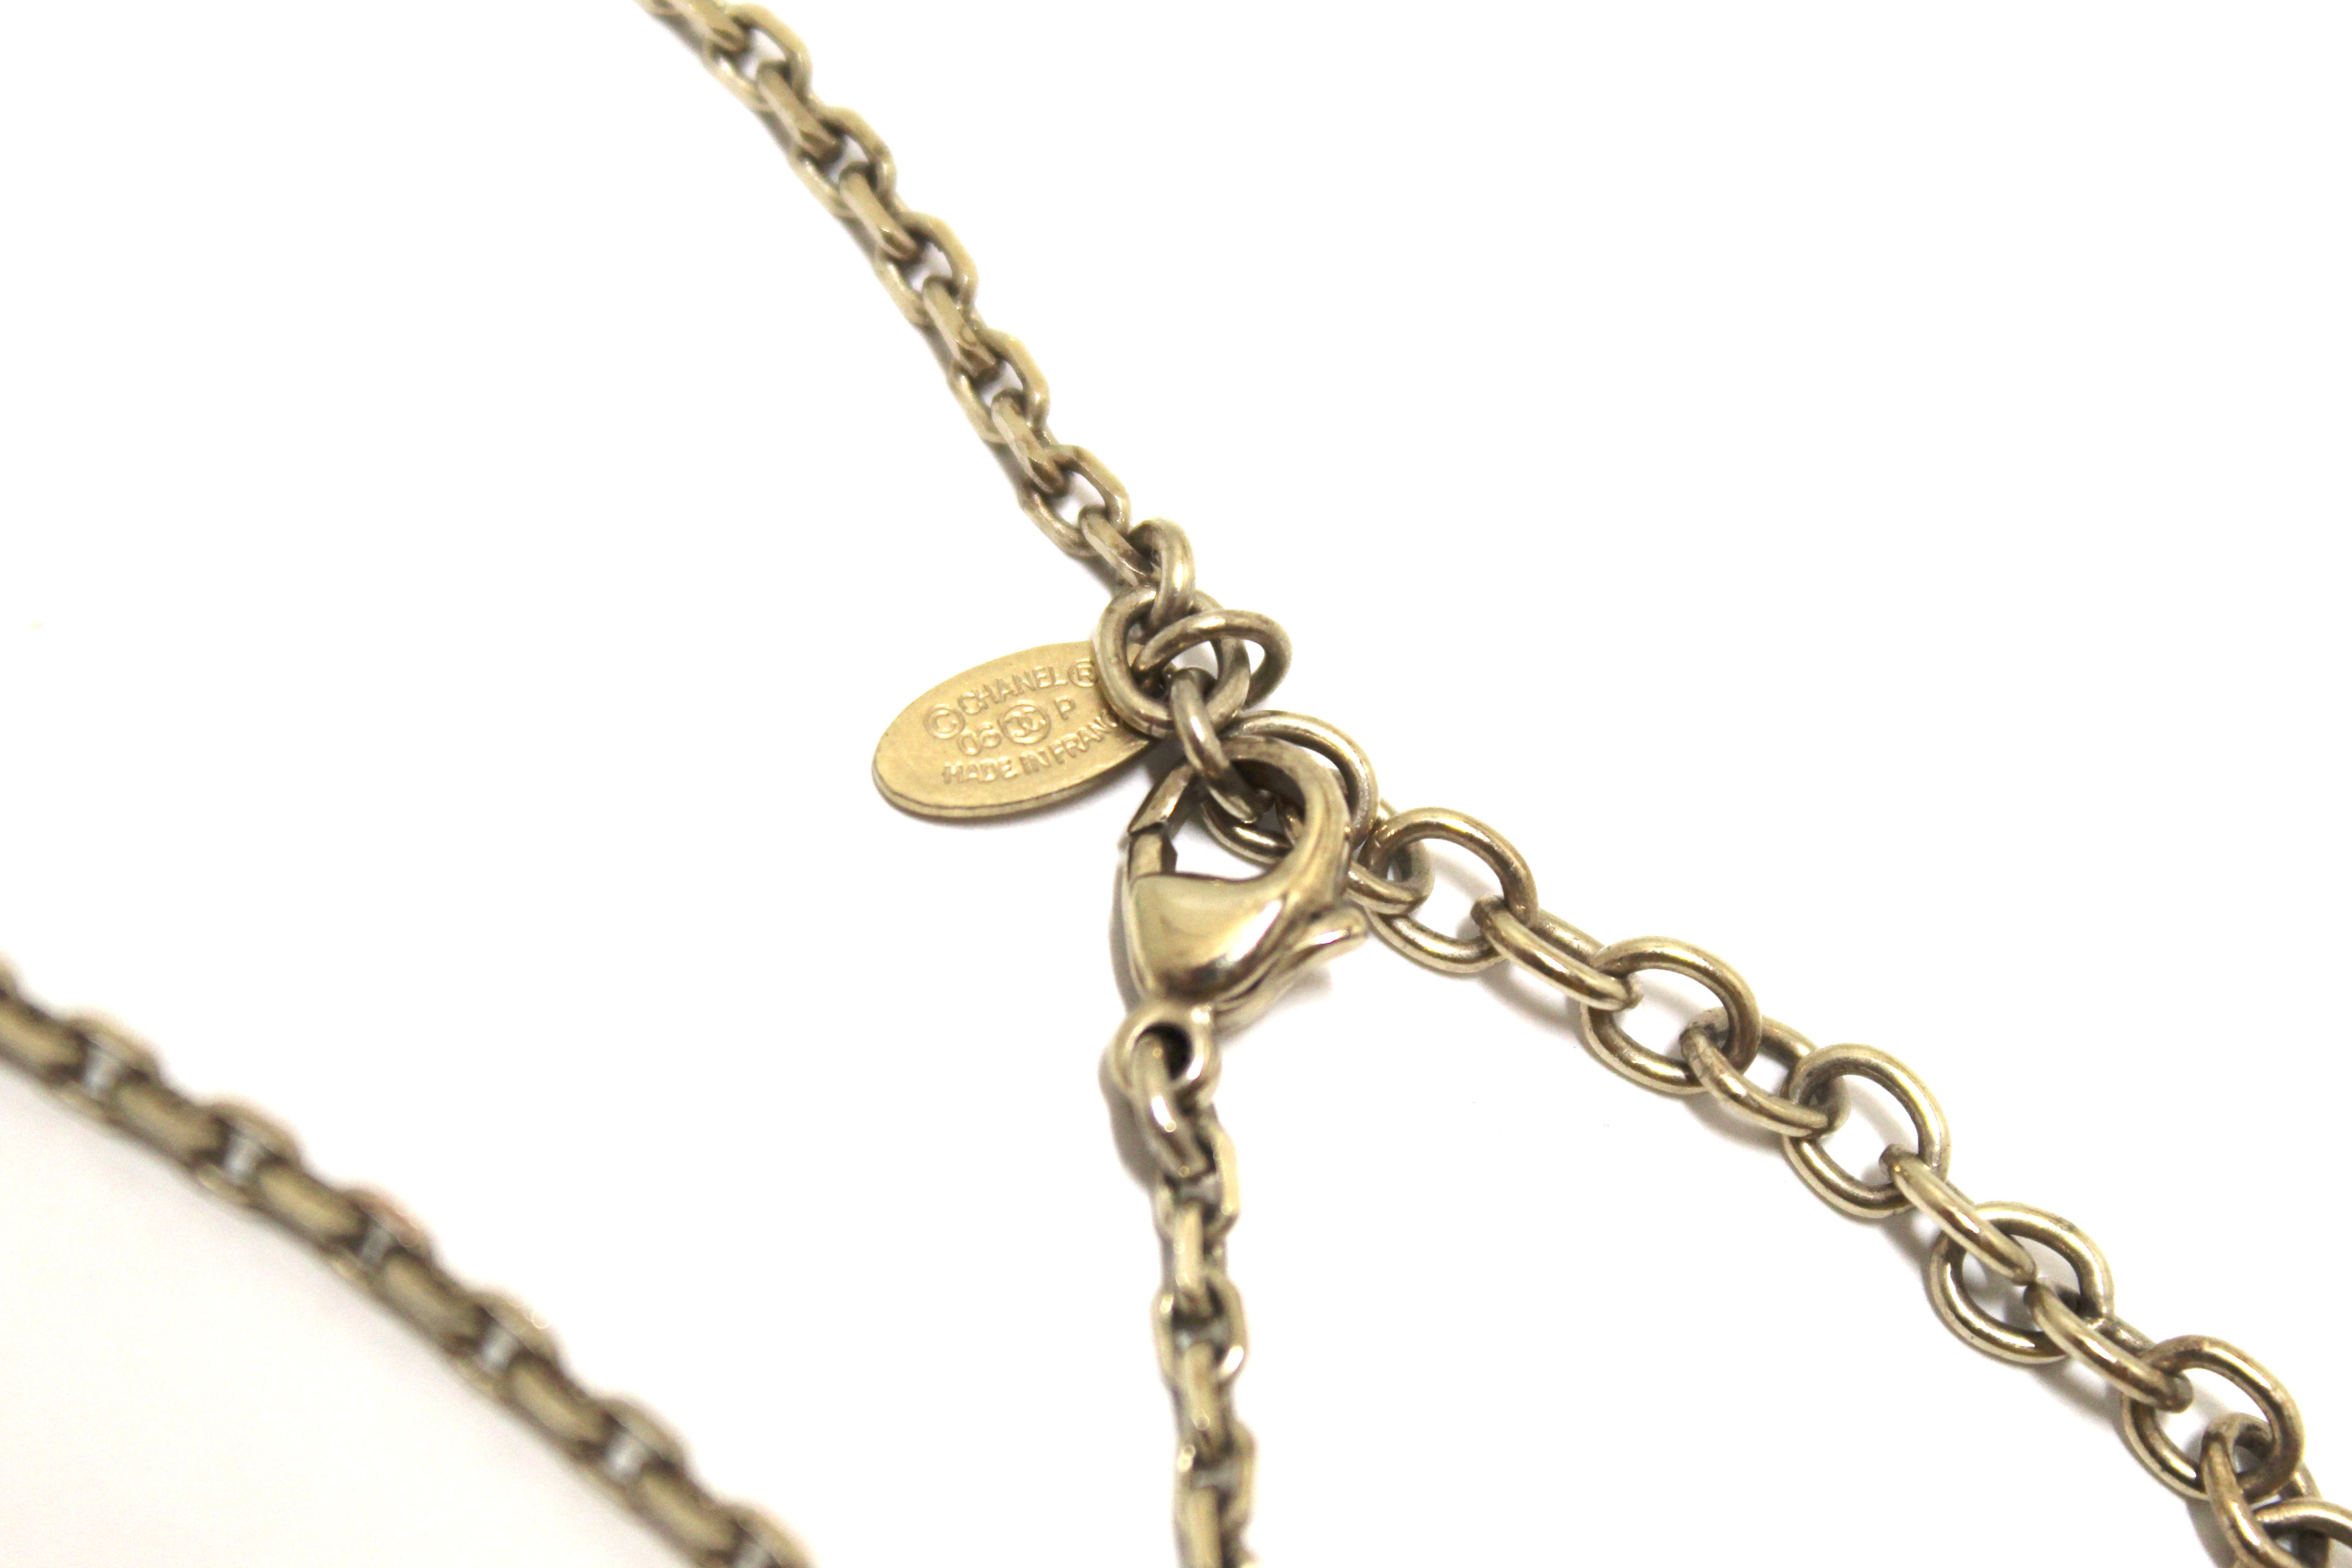 Authentic Chanel Vintage Beige Enamel Mini Heart Pendant Necklace